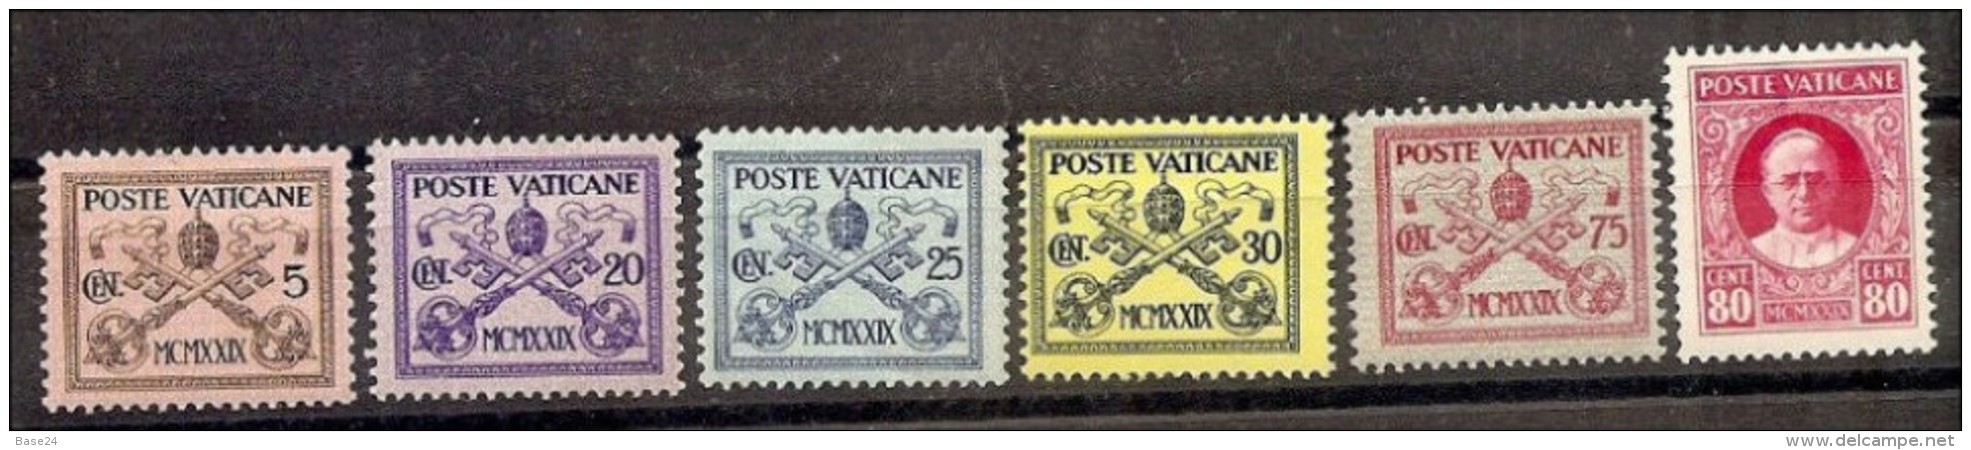 1929 Vaticano Vatican CONCILIAZIONE 5c, 20c, 25c, 30c, 75c, 80c MLH* - Nuovi